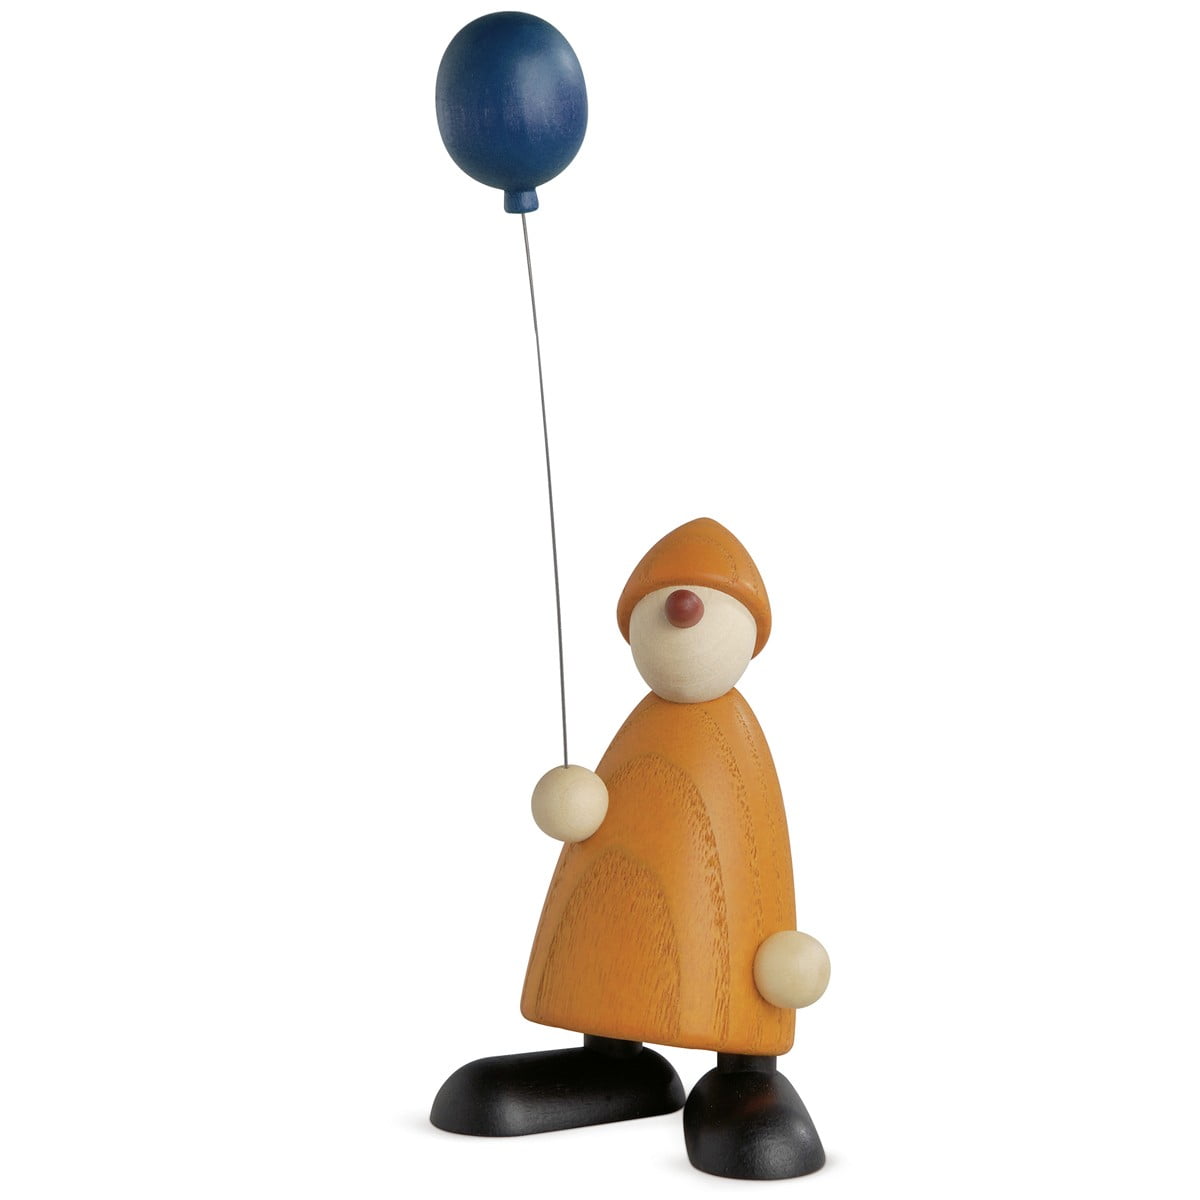 Linus mit blauem Luftballon gelb